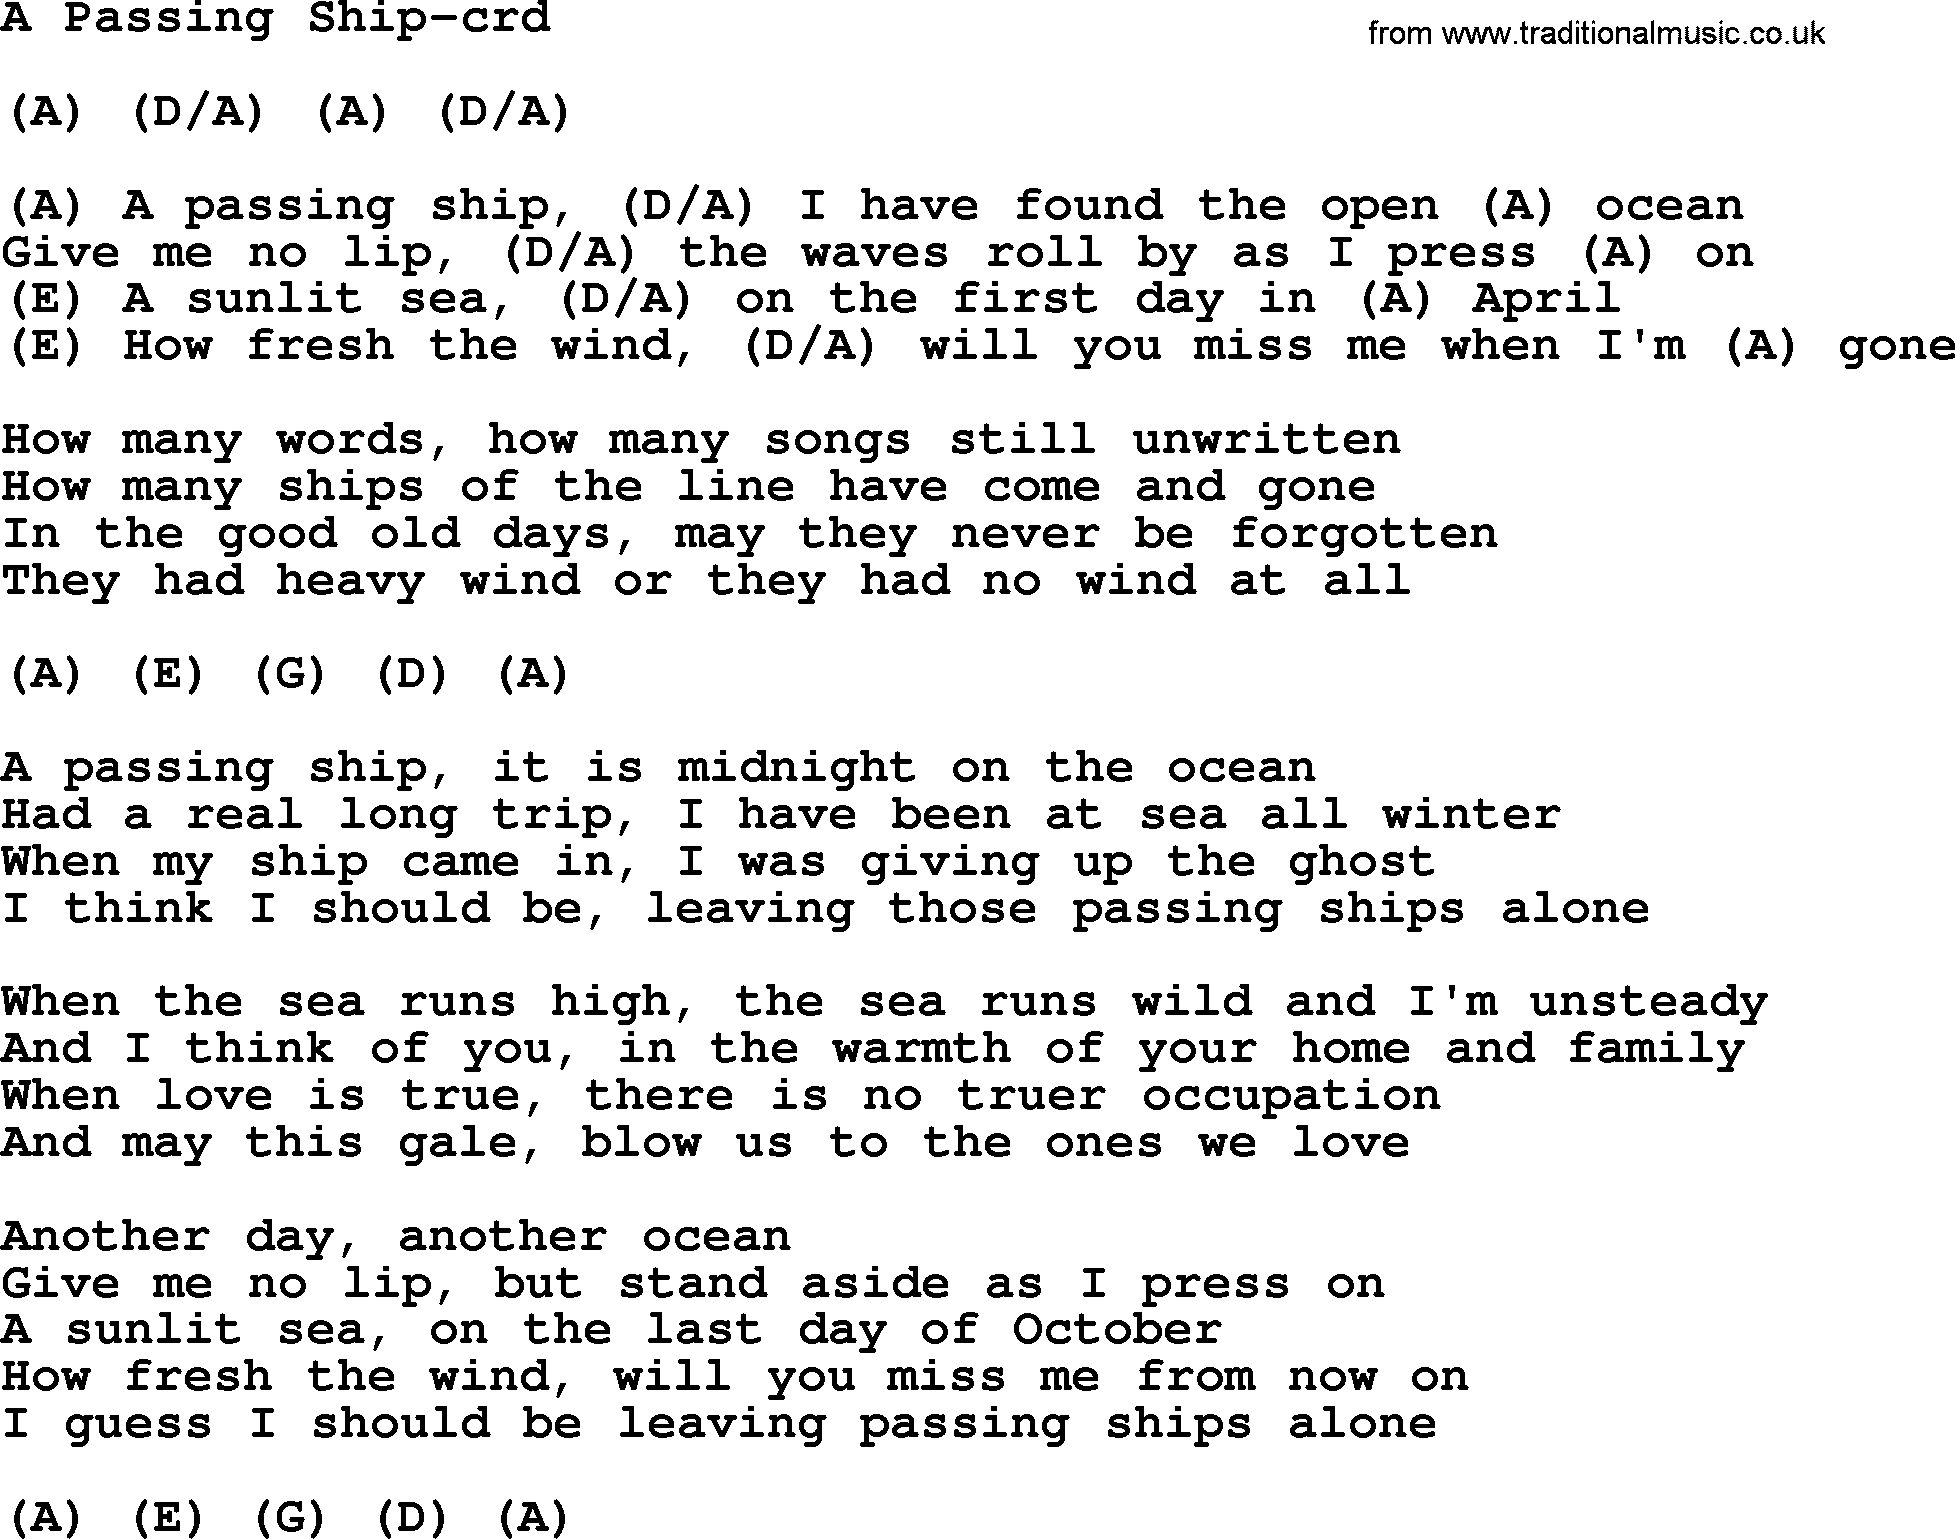 Gordon Lightfoot song A Passing Ship, lyrics and chords